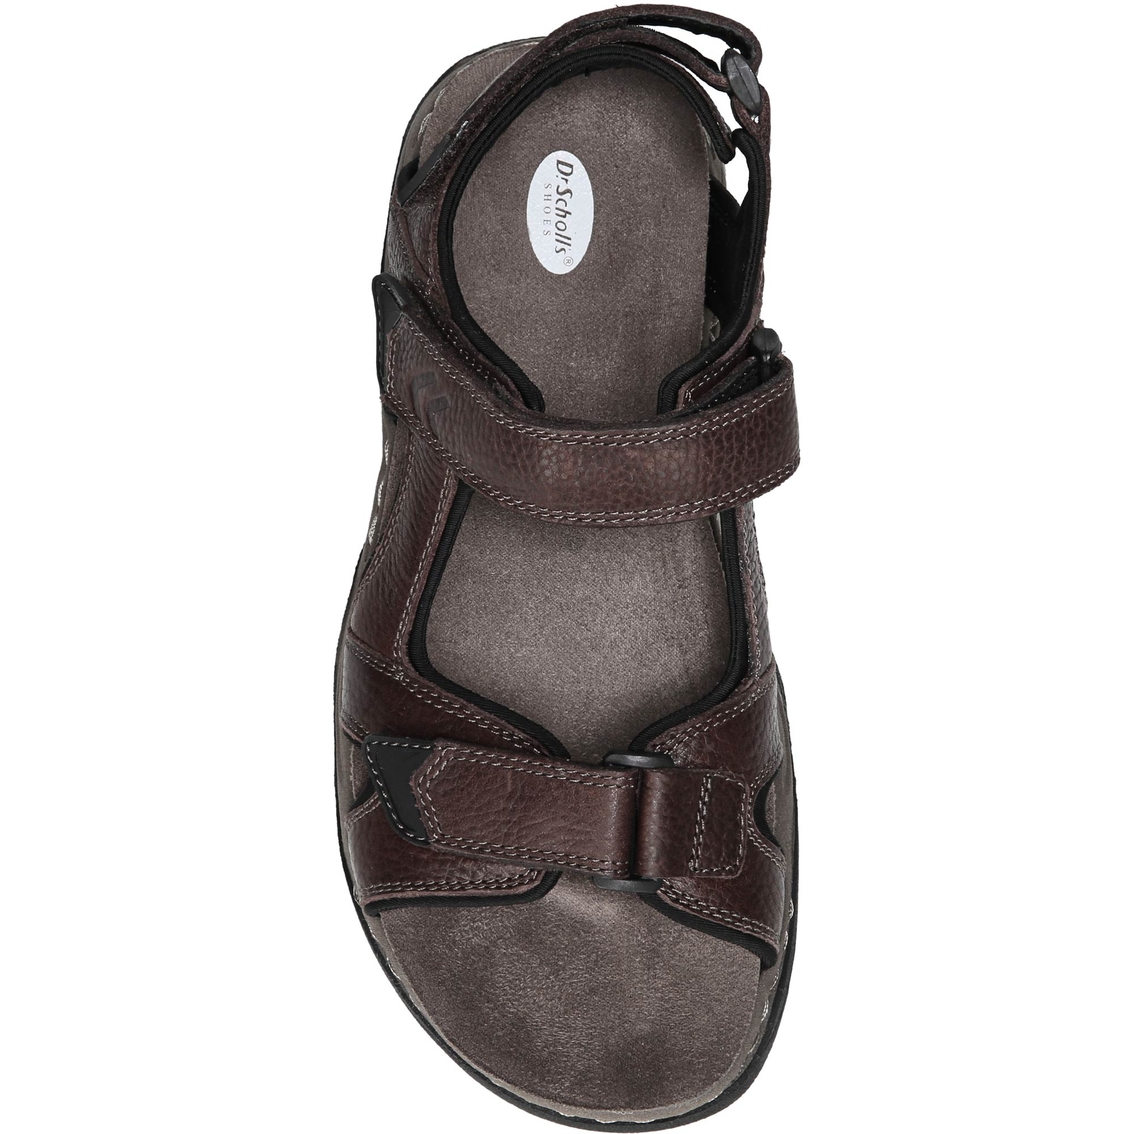 Dr. Scholl's Hayden Quarter Strap Sandals - Image 3 of 4